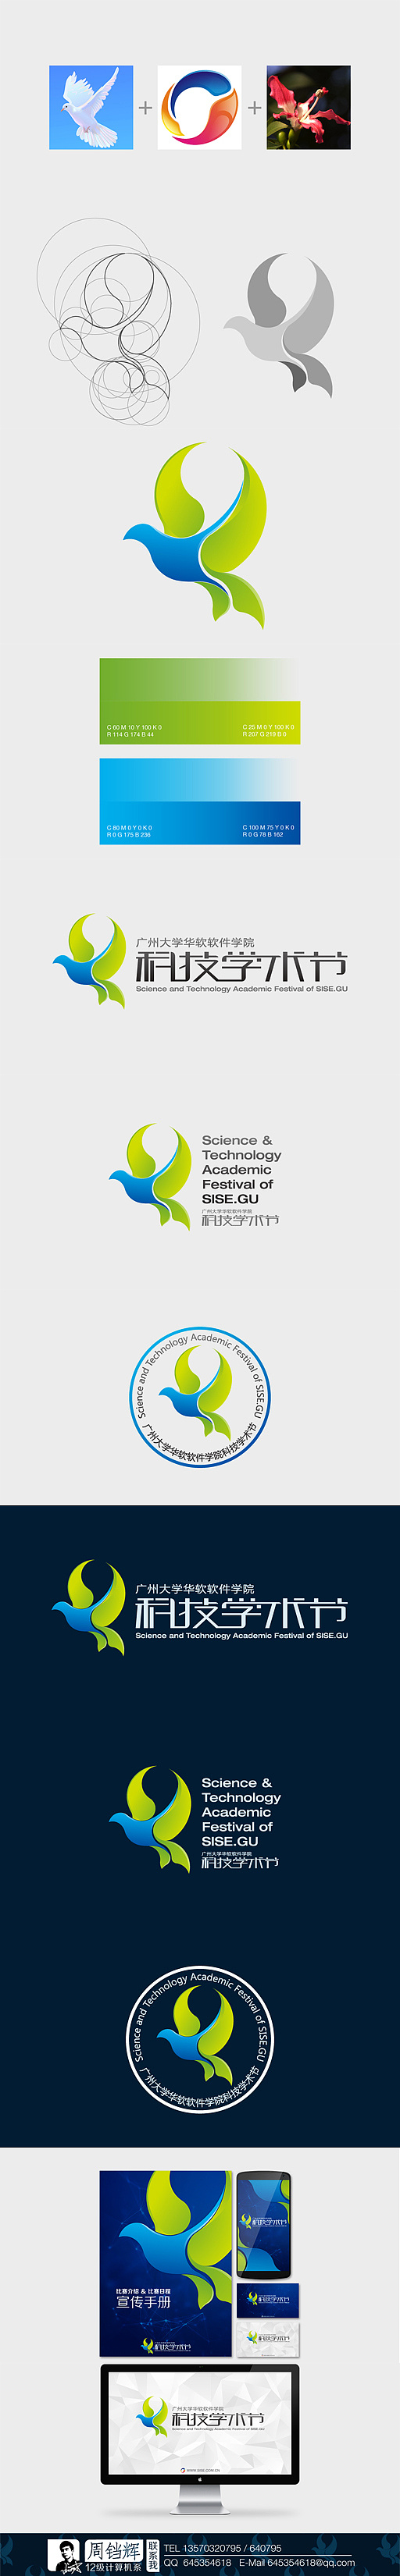 科技学术节 logo设计